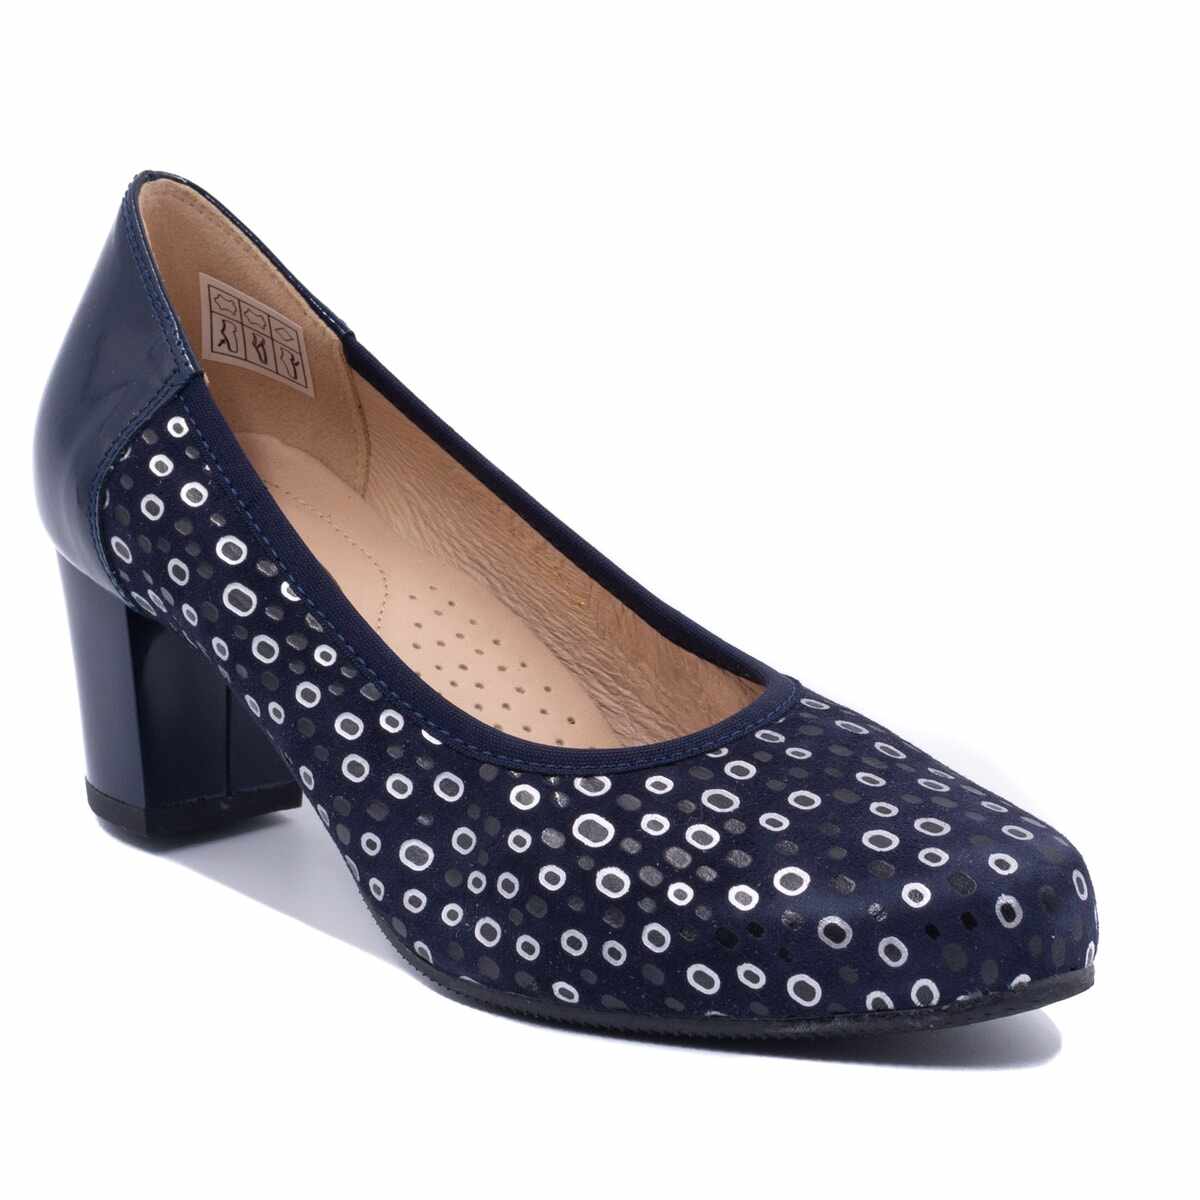 Pantofi eleganti dama, Beatrixx, din piele naturala velour cu model imprimat, culoare albastru